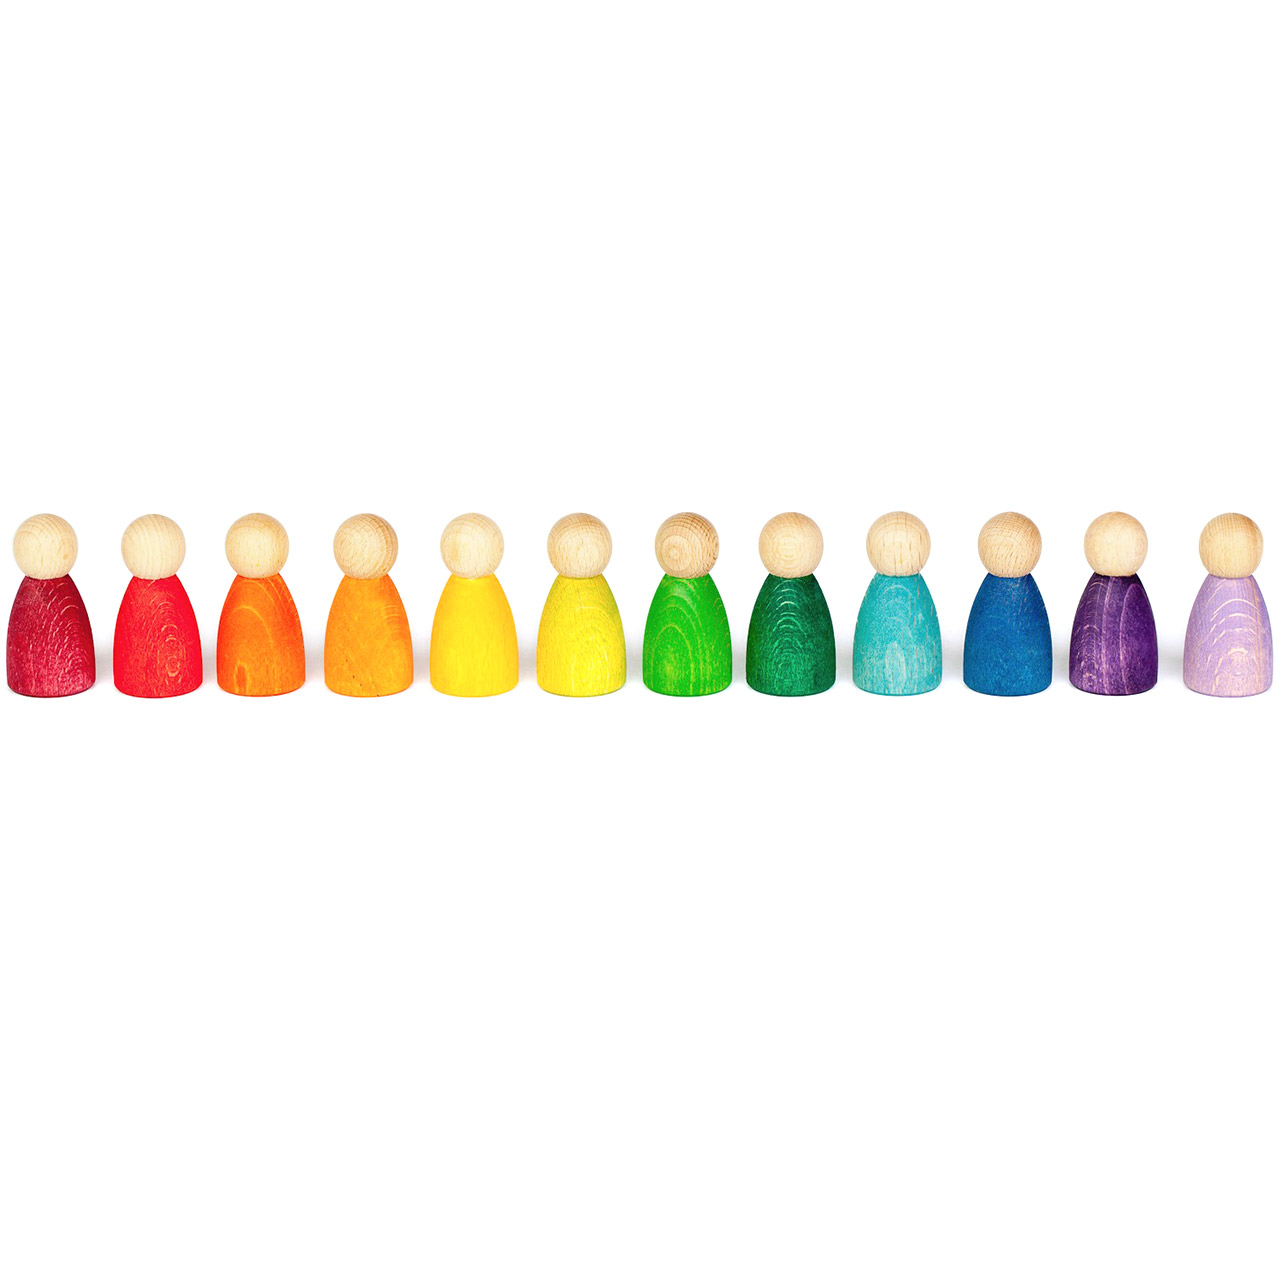 Nins® – 12 Holzspielfiguren in Regenbogenfarben ab 1 Jahr